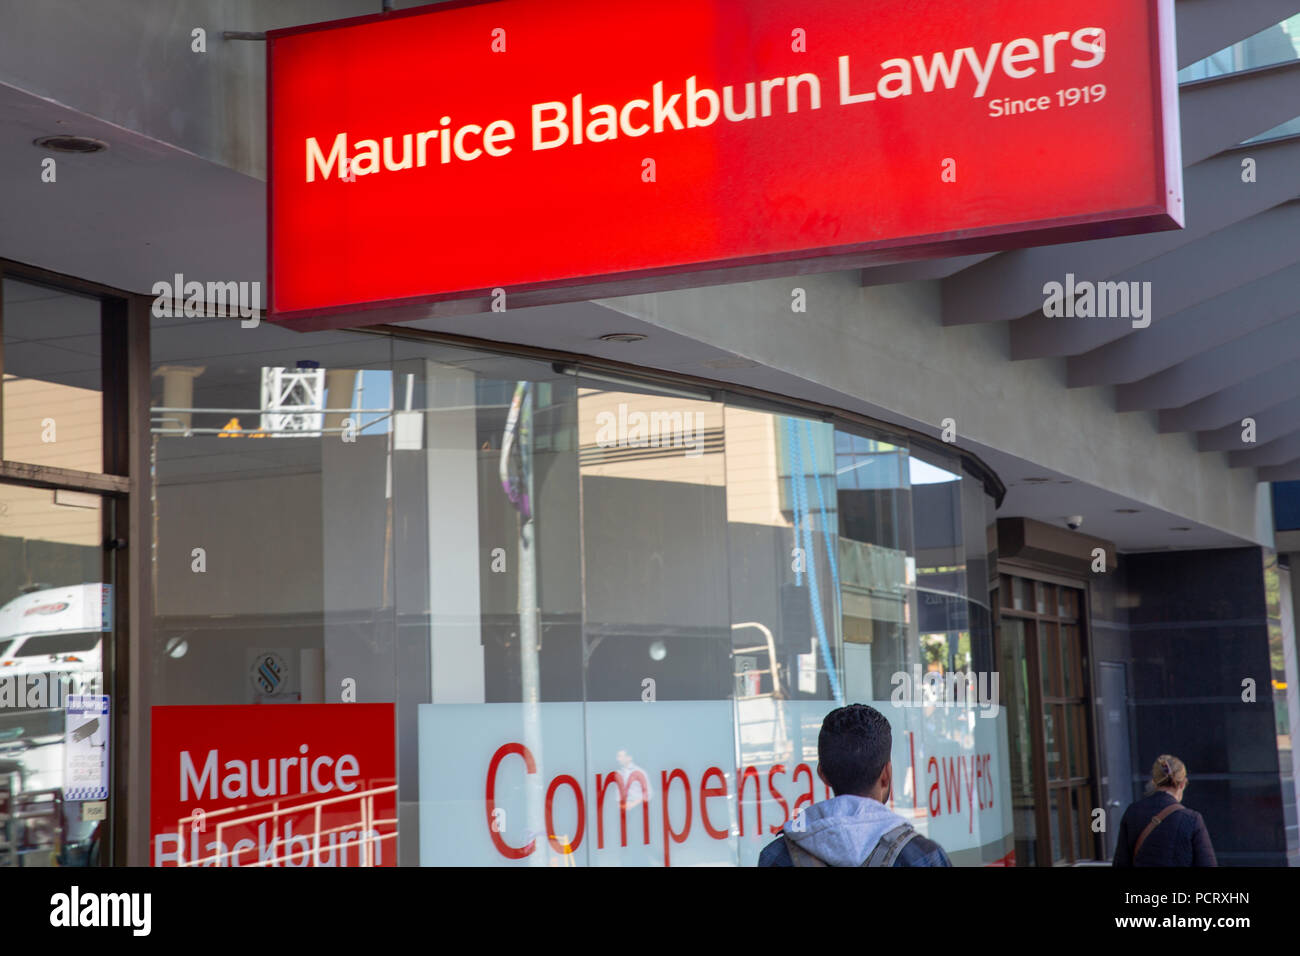 Office of Maurice Blackburn plaintiff lawyers in Parramatta,Western Sydney,Australia Stock Photo